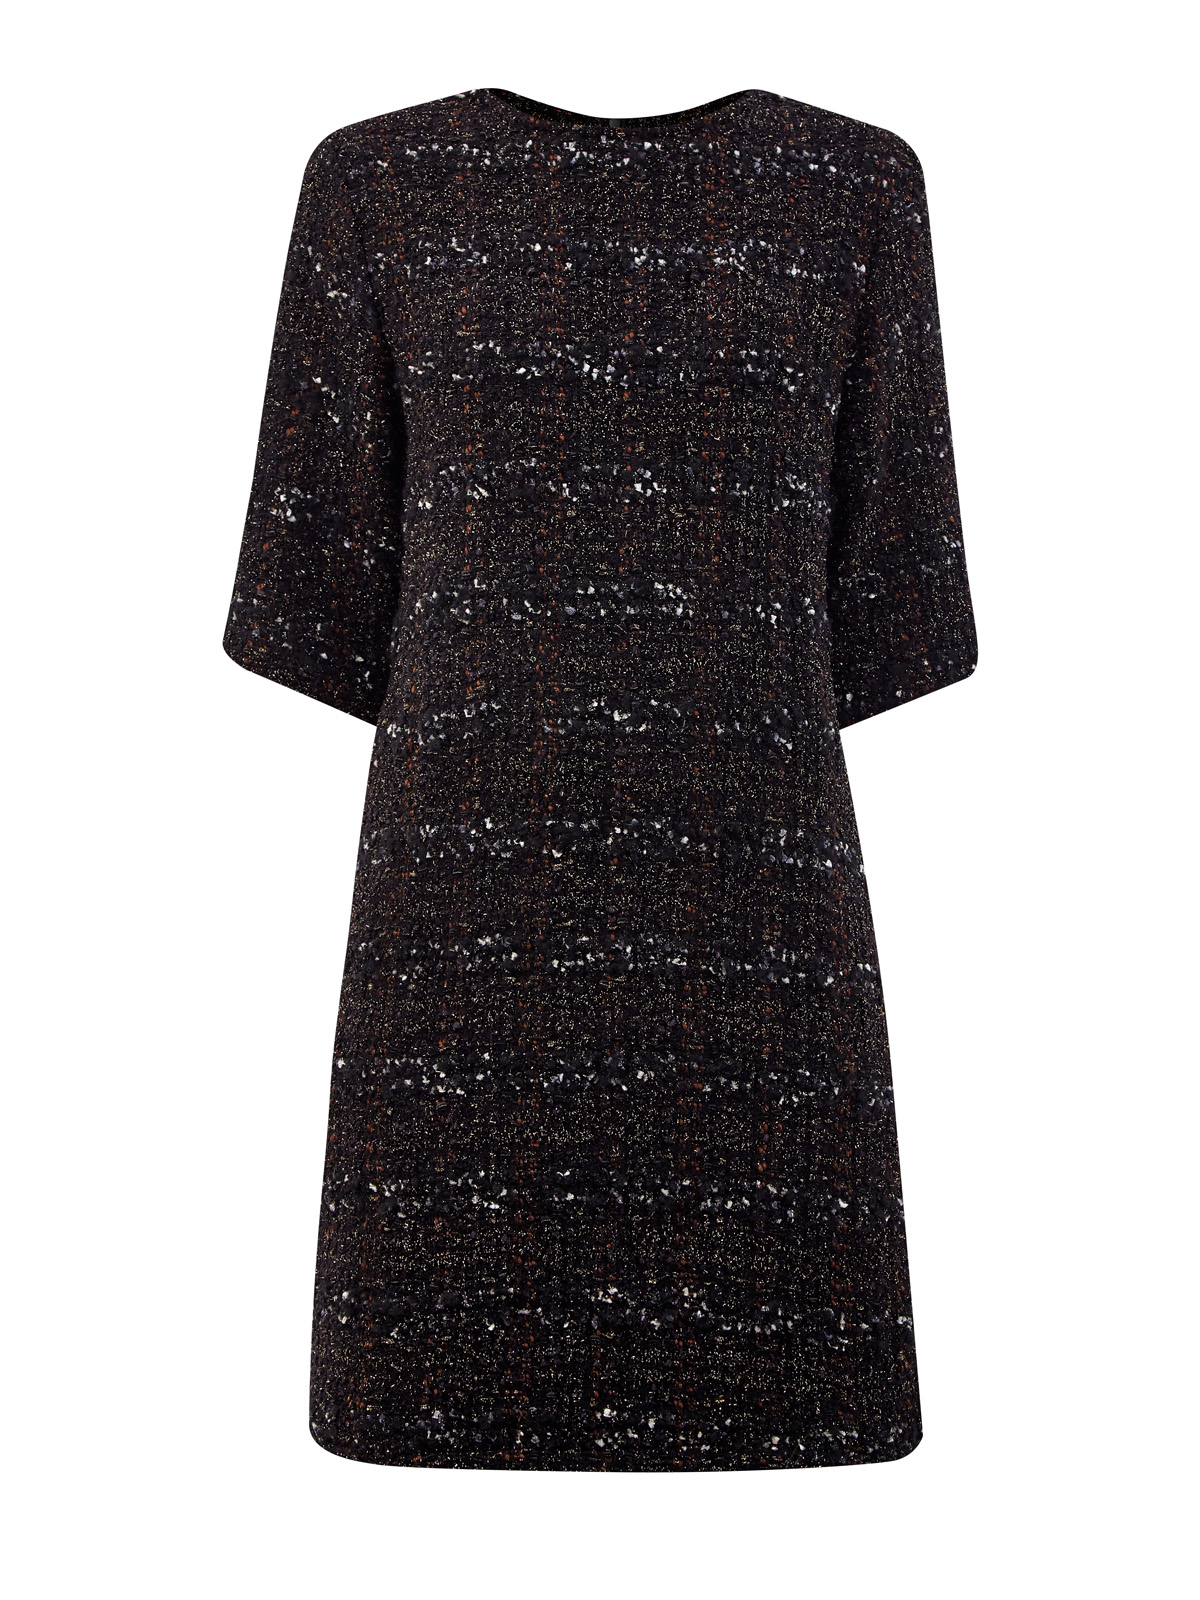 Платье А-силуэта из фактурного твида с мерцающей нитью ламе FABIANA FILIPPI черного цвета